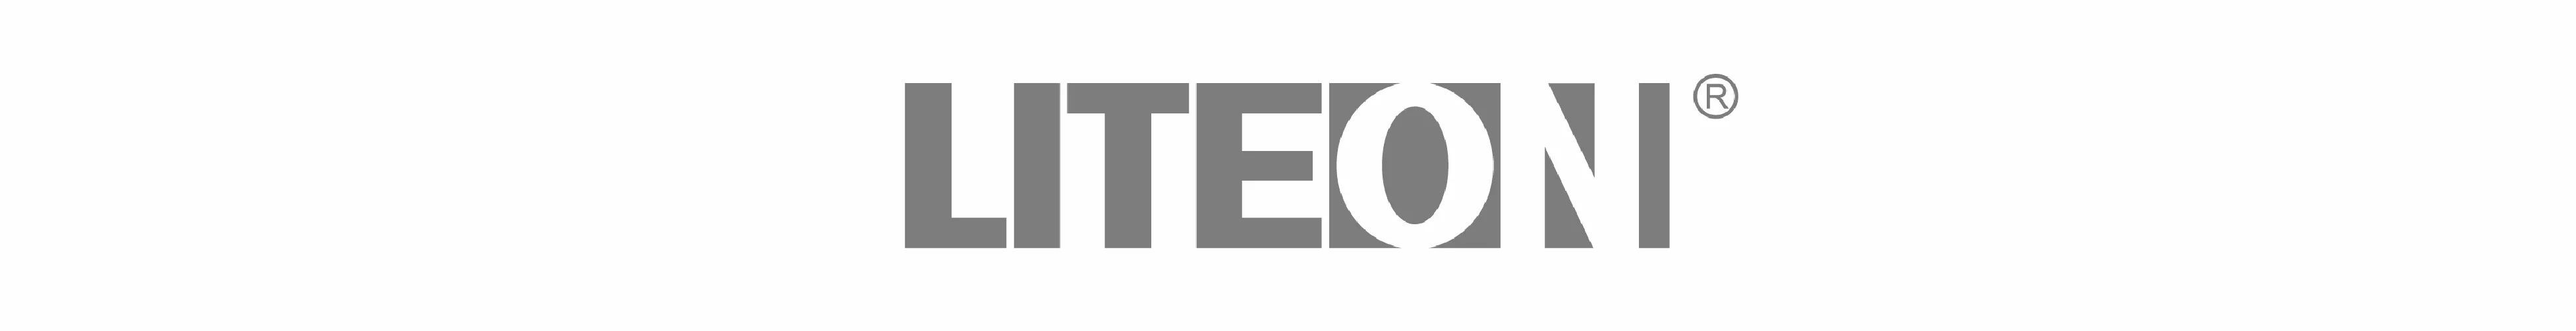 Liteon_logo